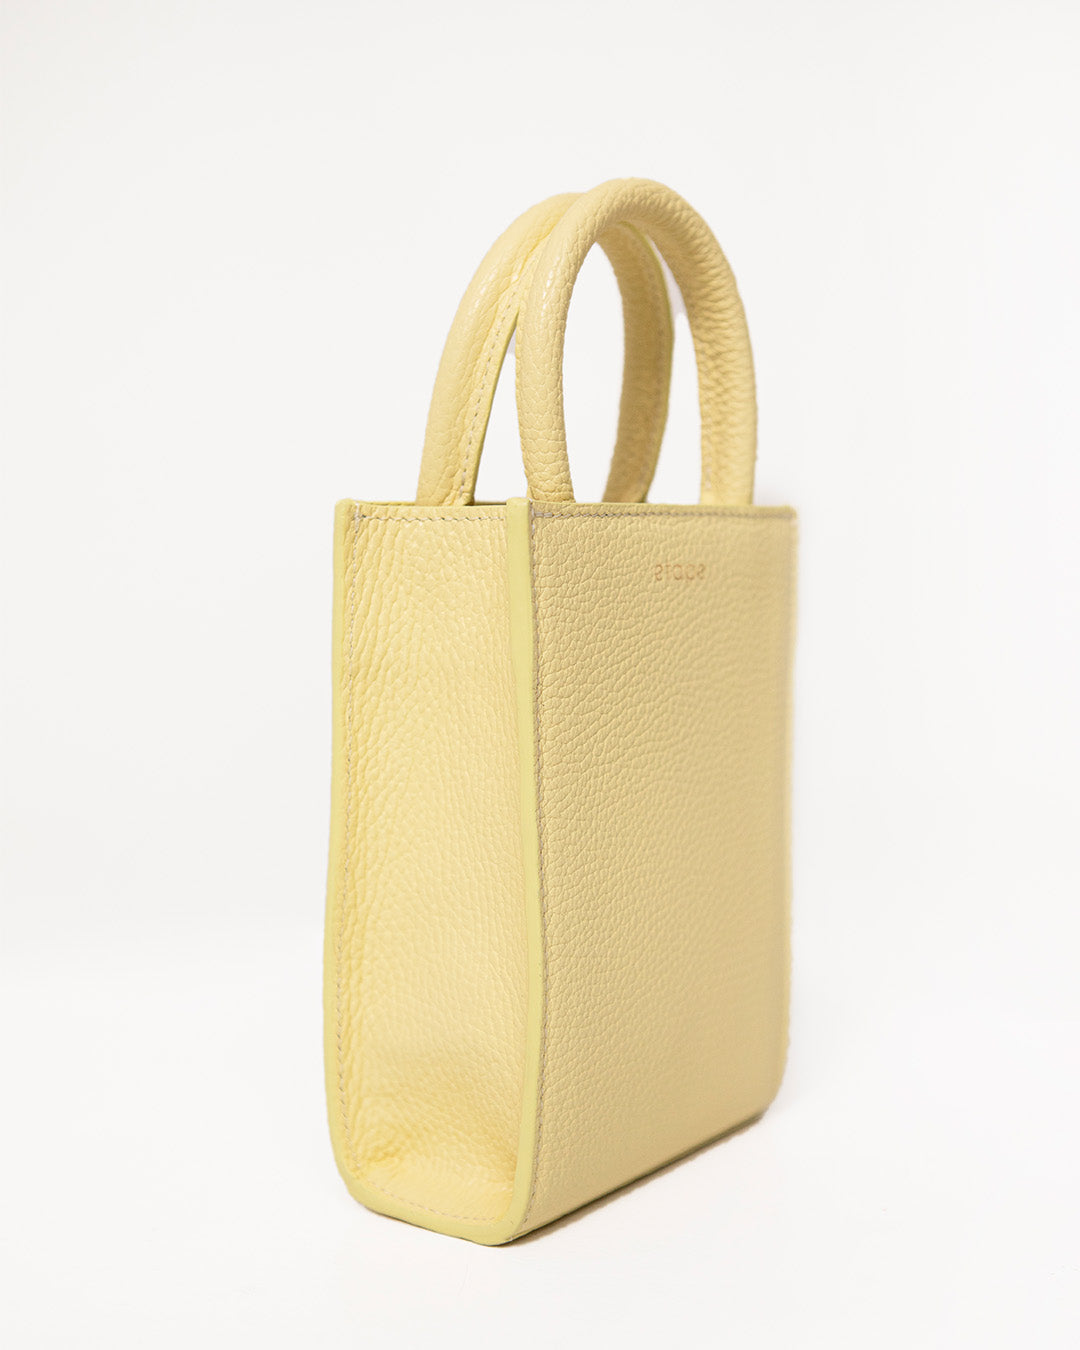 Mimi Bag in Lemon